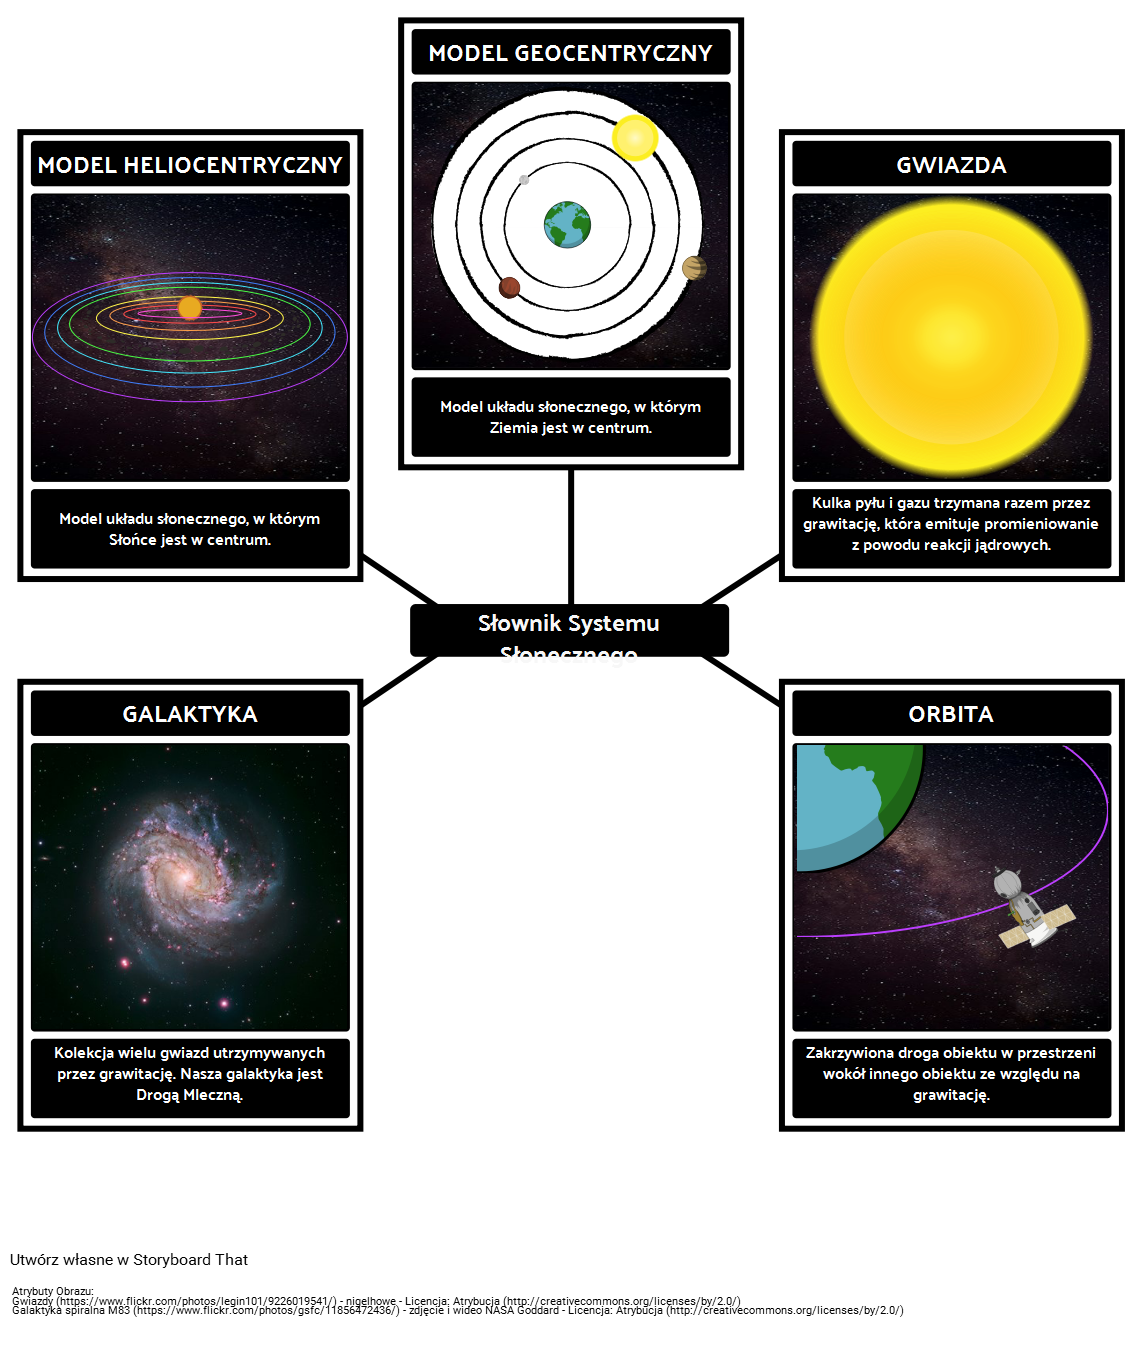 Słownik Systemu Słonecznego